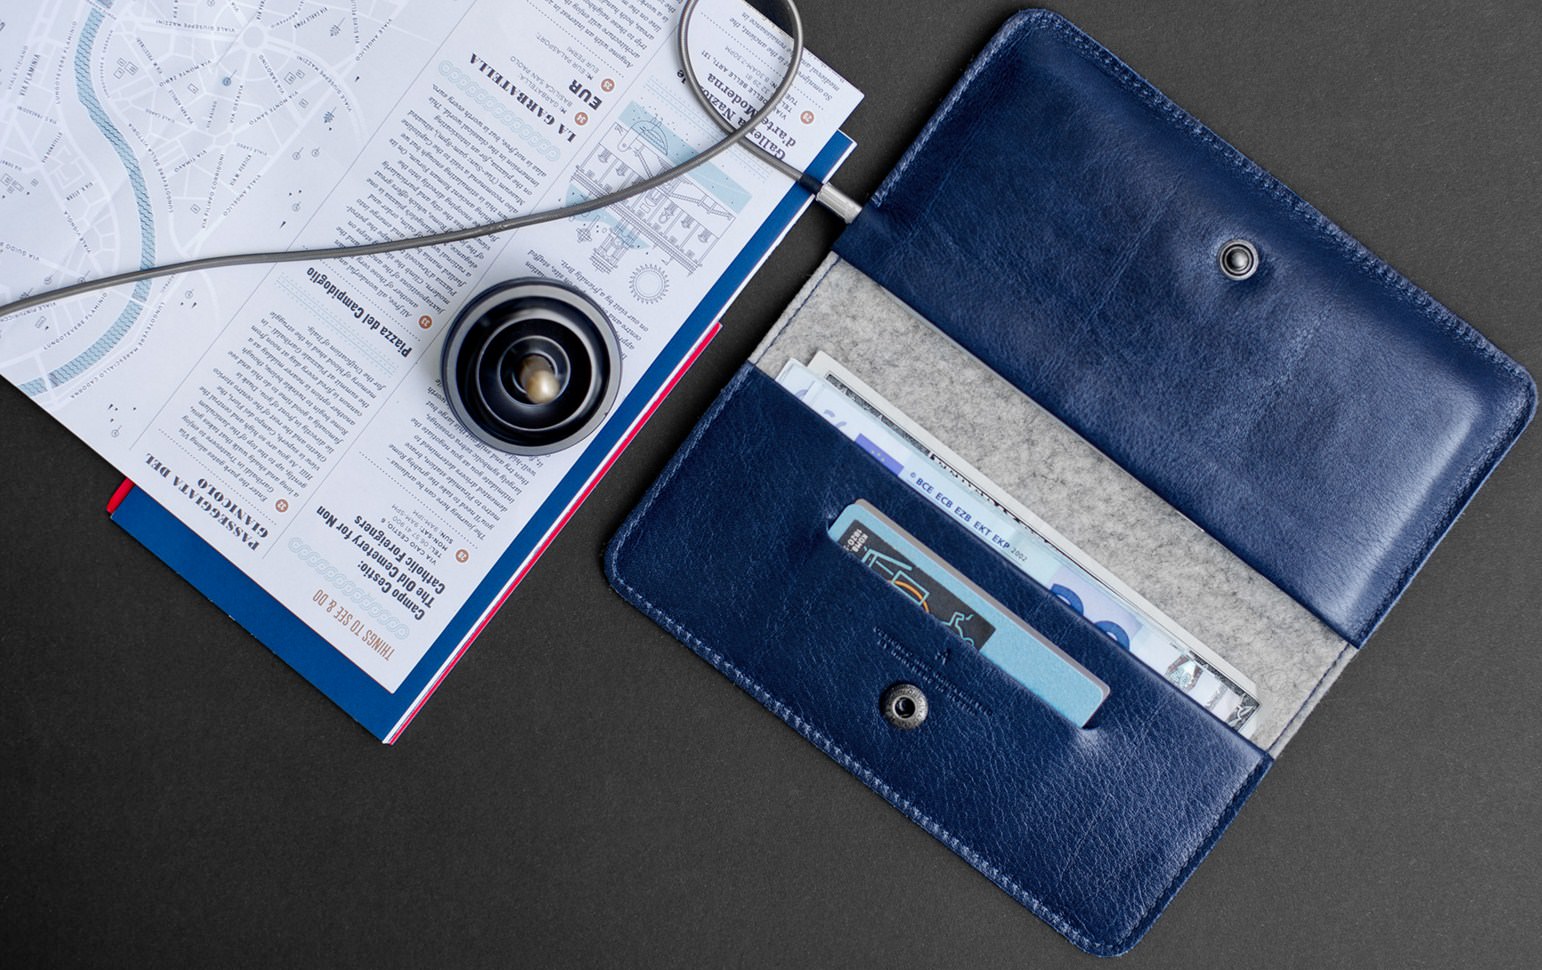 Чехол-кошелек синего цвета из натуральной кожи для iPhone 6/6s Handwers Ranch